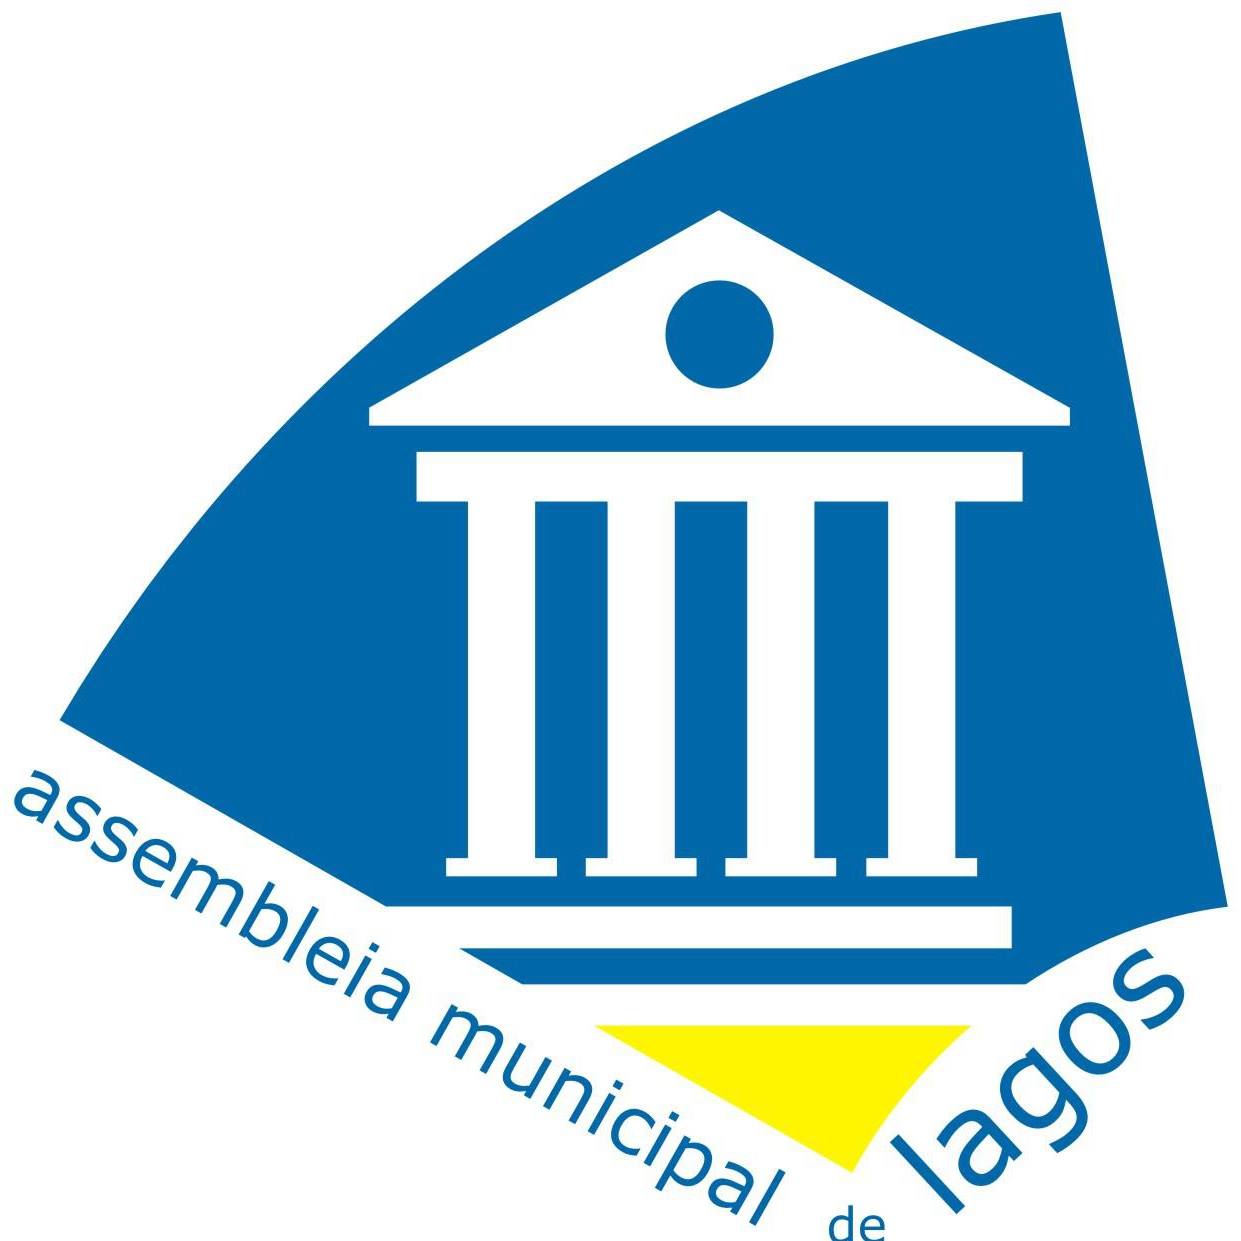 Assembleia Municipal de Lagos pela melhoria do serviço público regional de Rádio e Televisão no Algarve